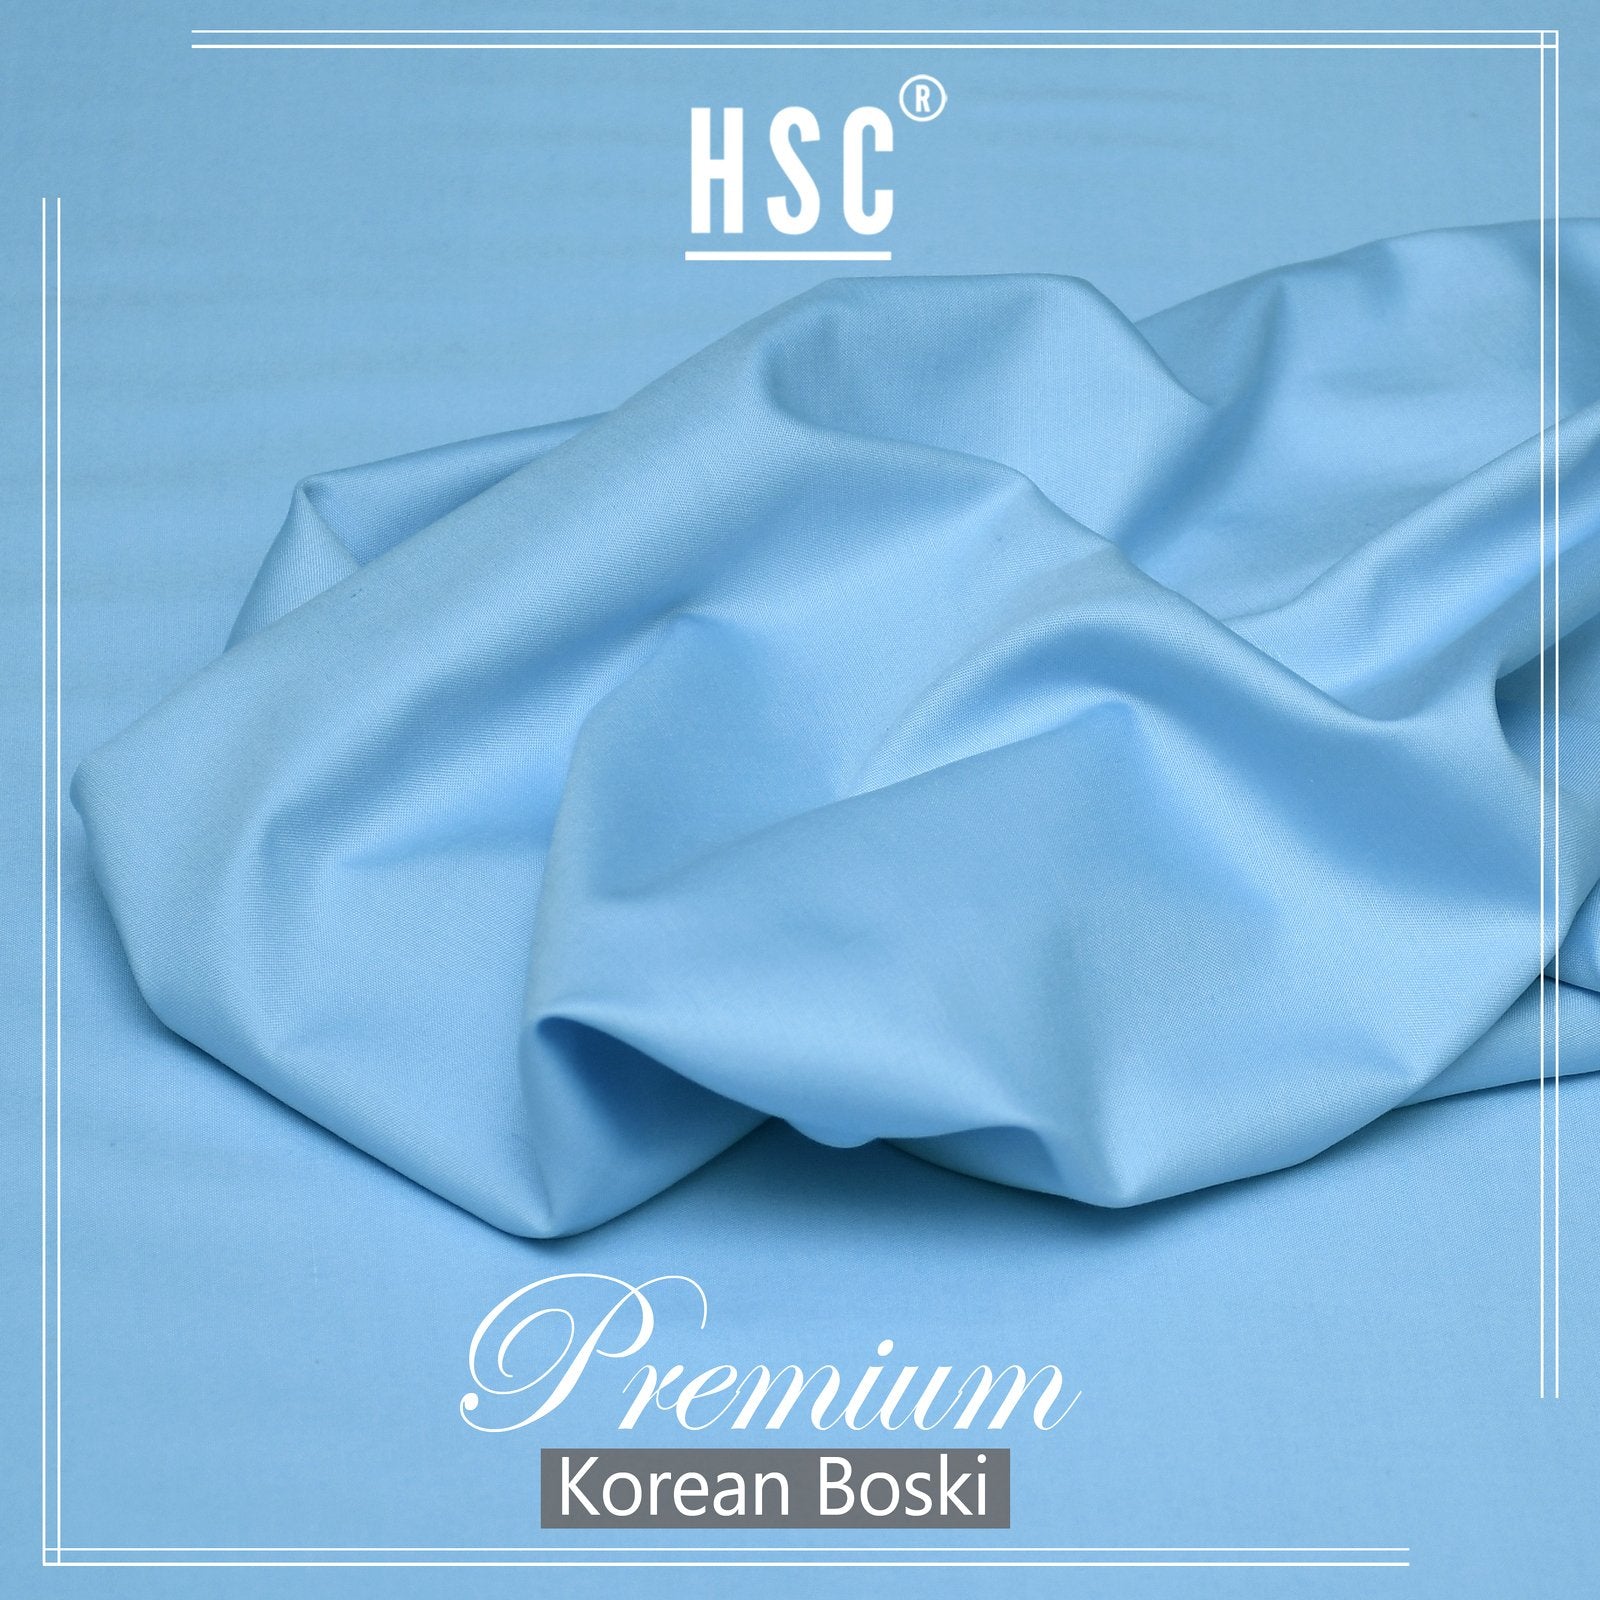 Buy1 Get 1 Free Premium Korean Boski For Men - NPKB5 HSC